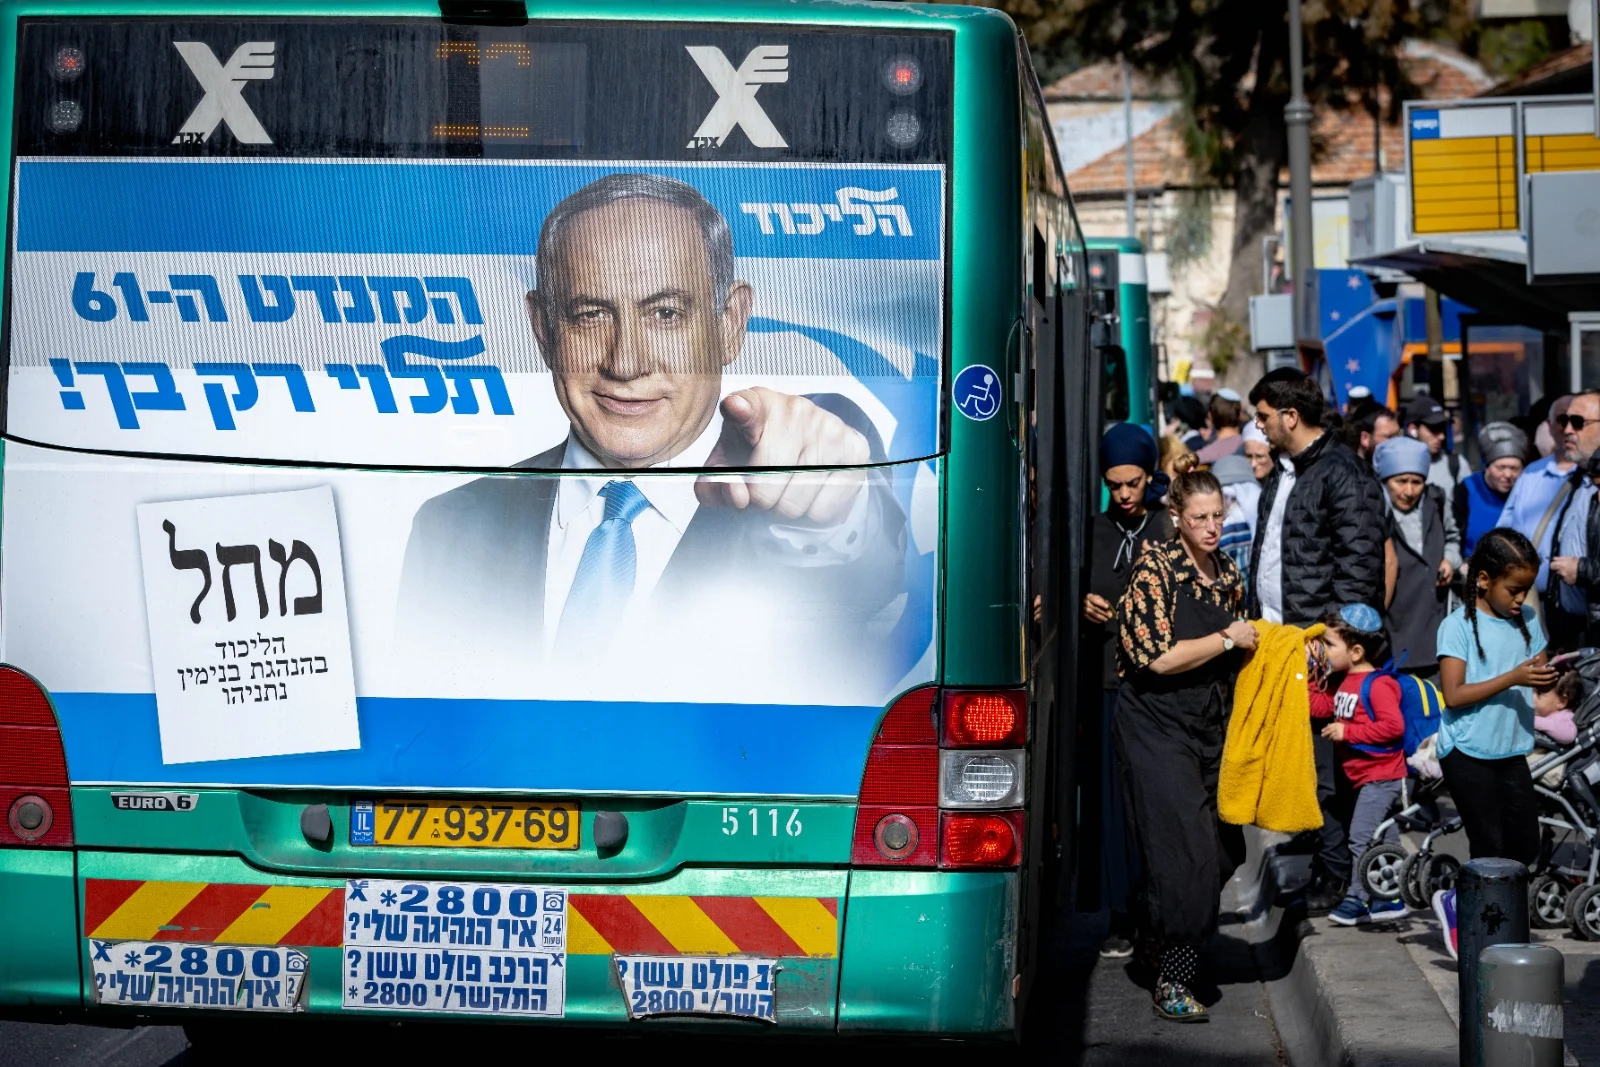 קמפיין הבחירות של הליכוד על אוטובוס בירושלים לקראת הבחירות לכנסת ה-25